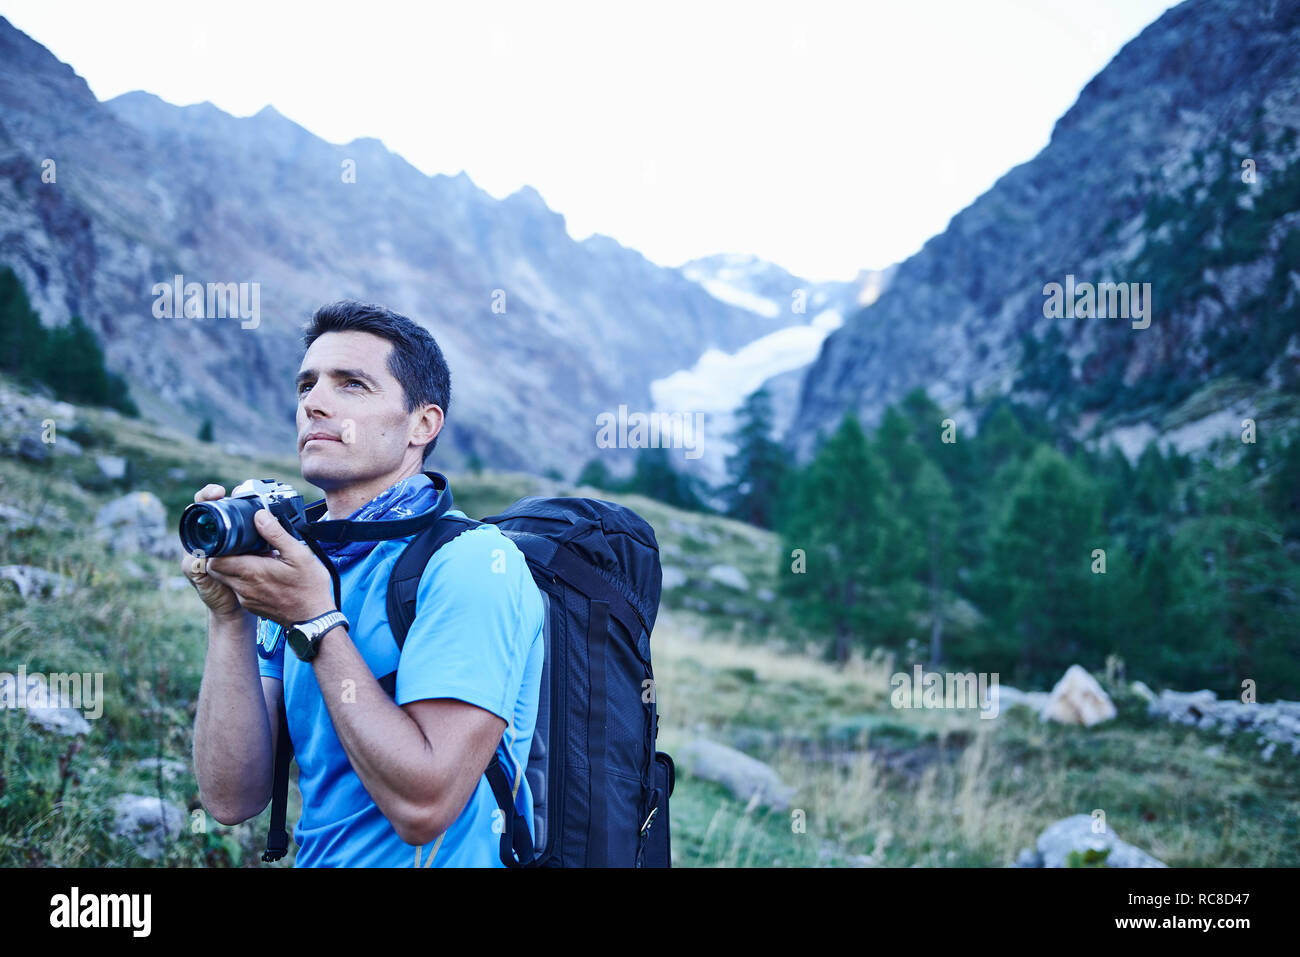 Hiker taking photograph, Mont Cervin, Matterhorn, Valais, Switzerland Stock Photo